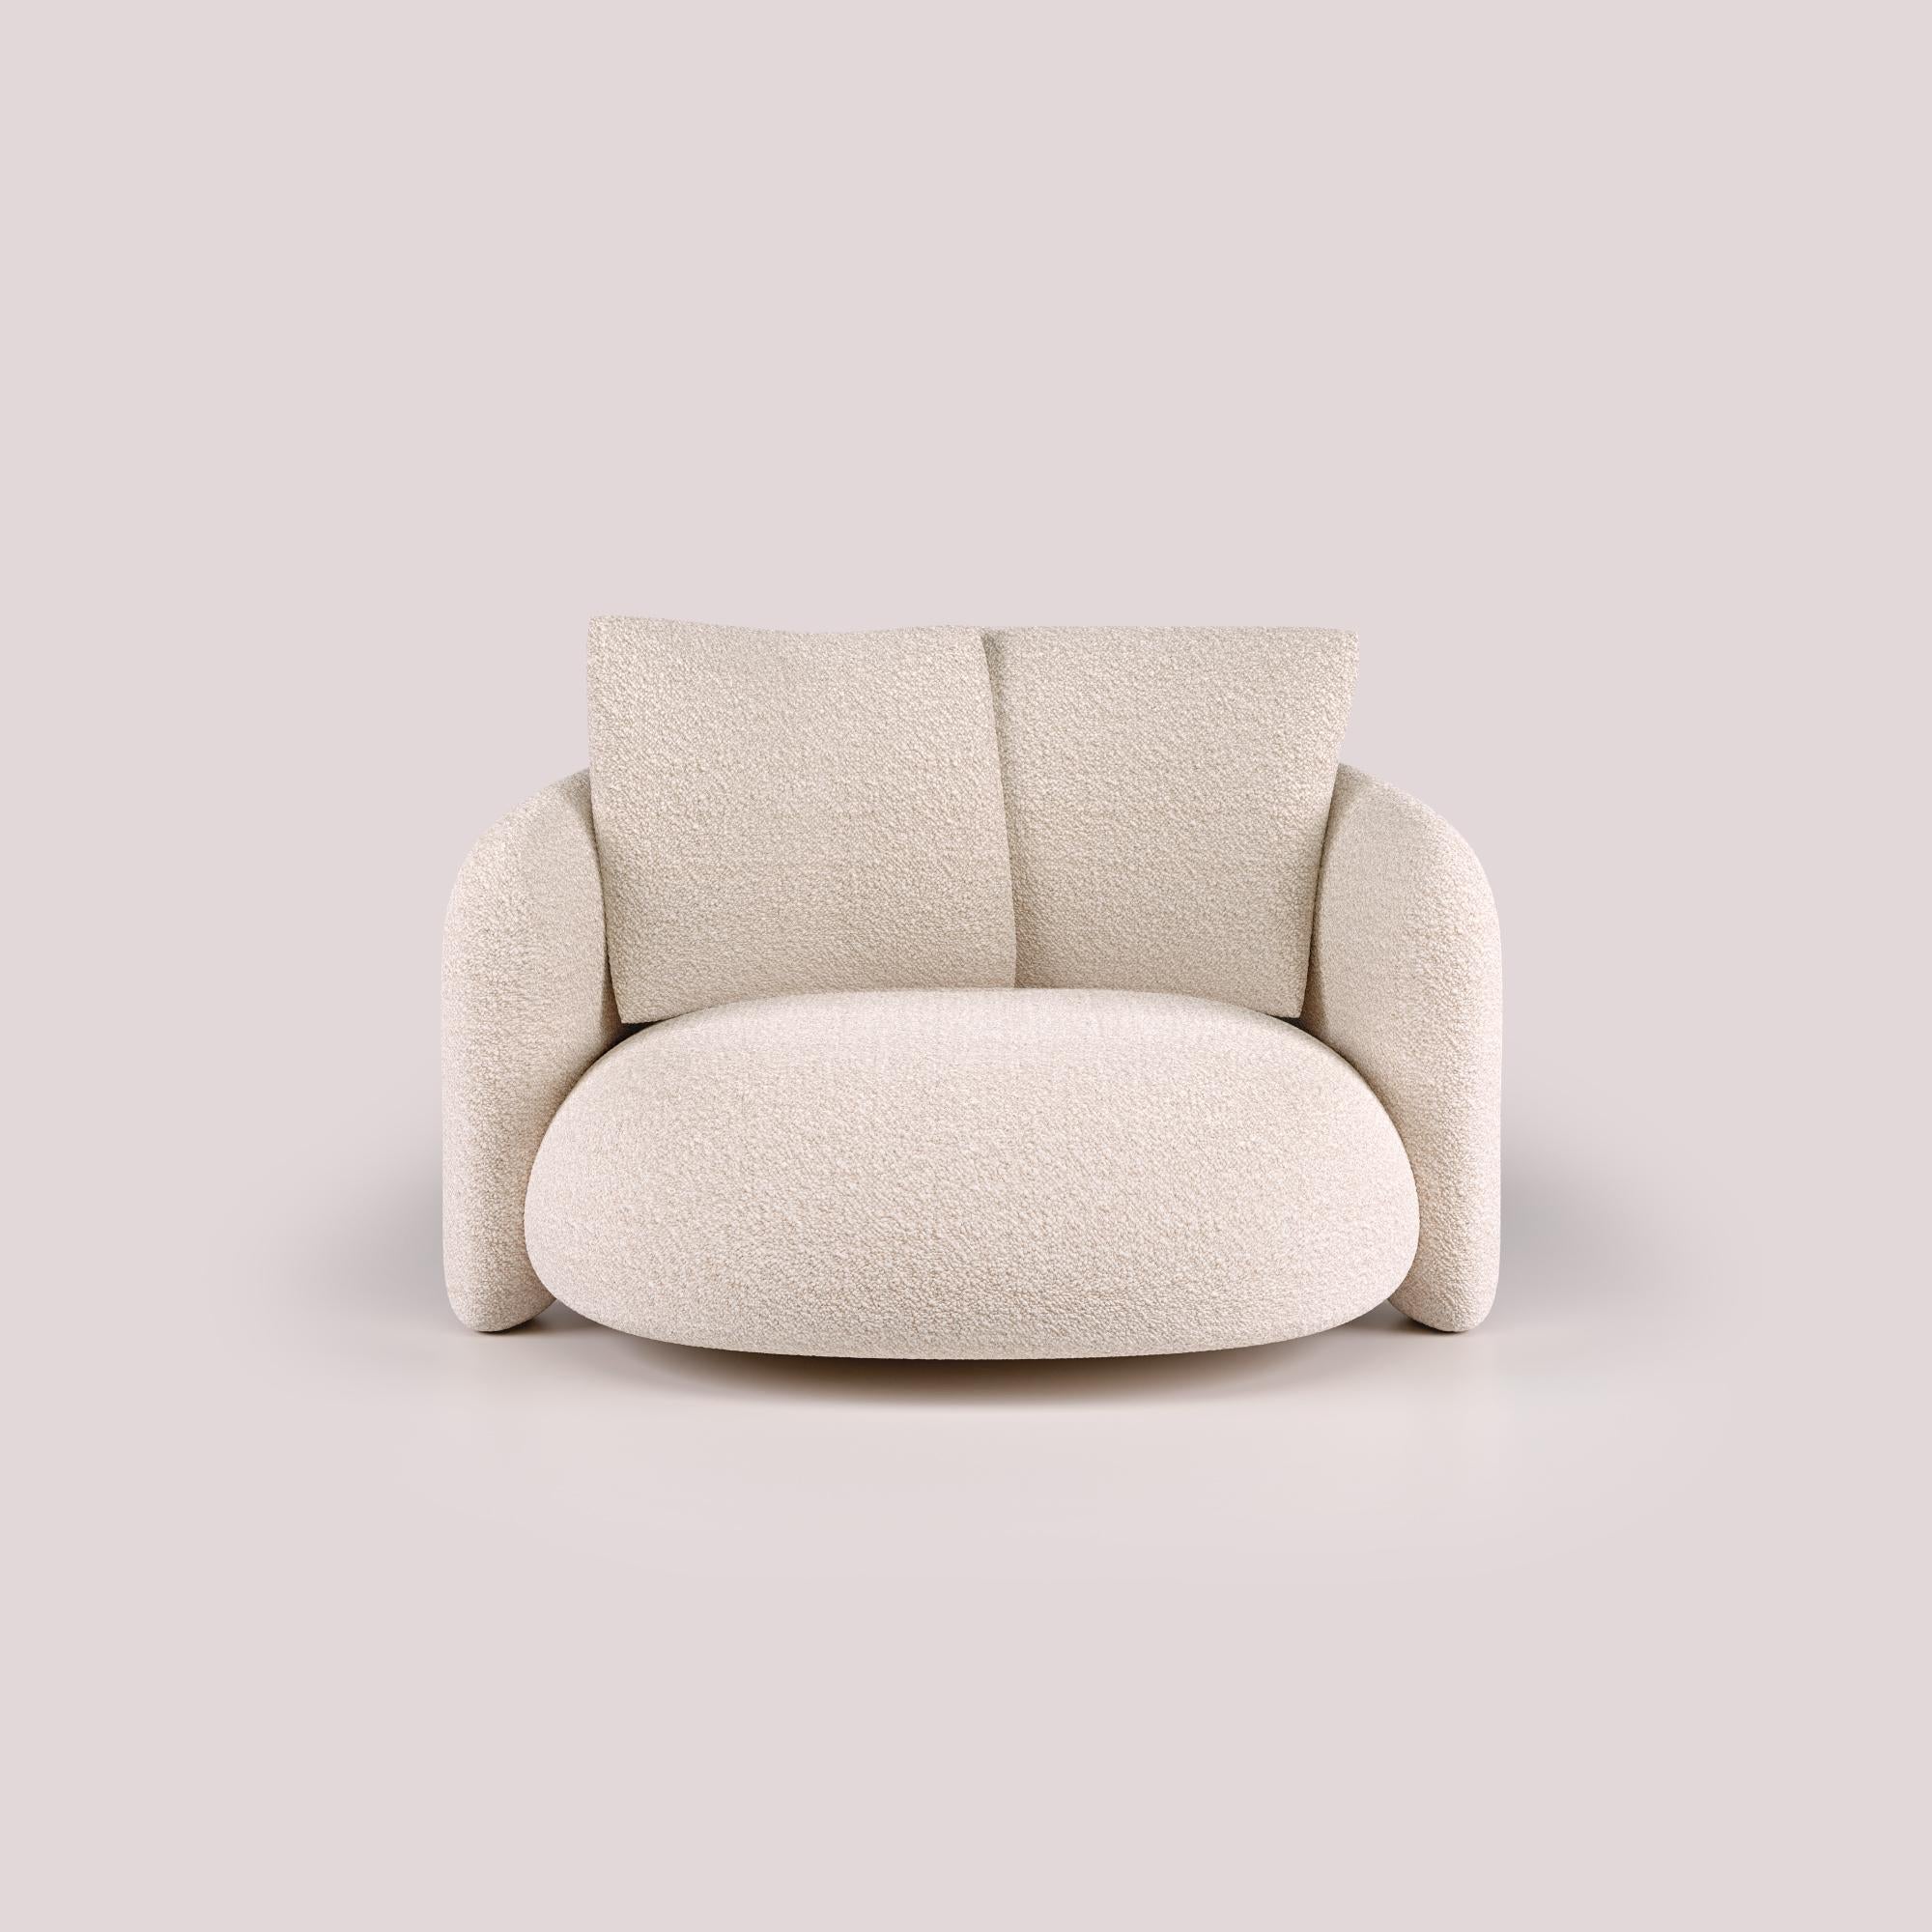 Expression de l'excellence du design moderne, le Bold Love Seat témoigne de l'art de vivre dans le luxe. Des décennies d'expertise en matière de design sont mises en valeur à travers une esthétique élégante et raffinée. Son design accueillant